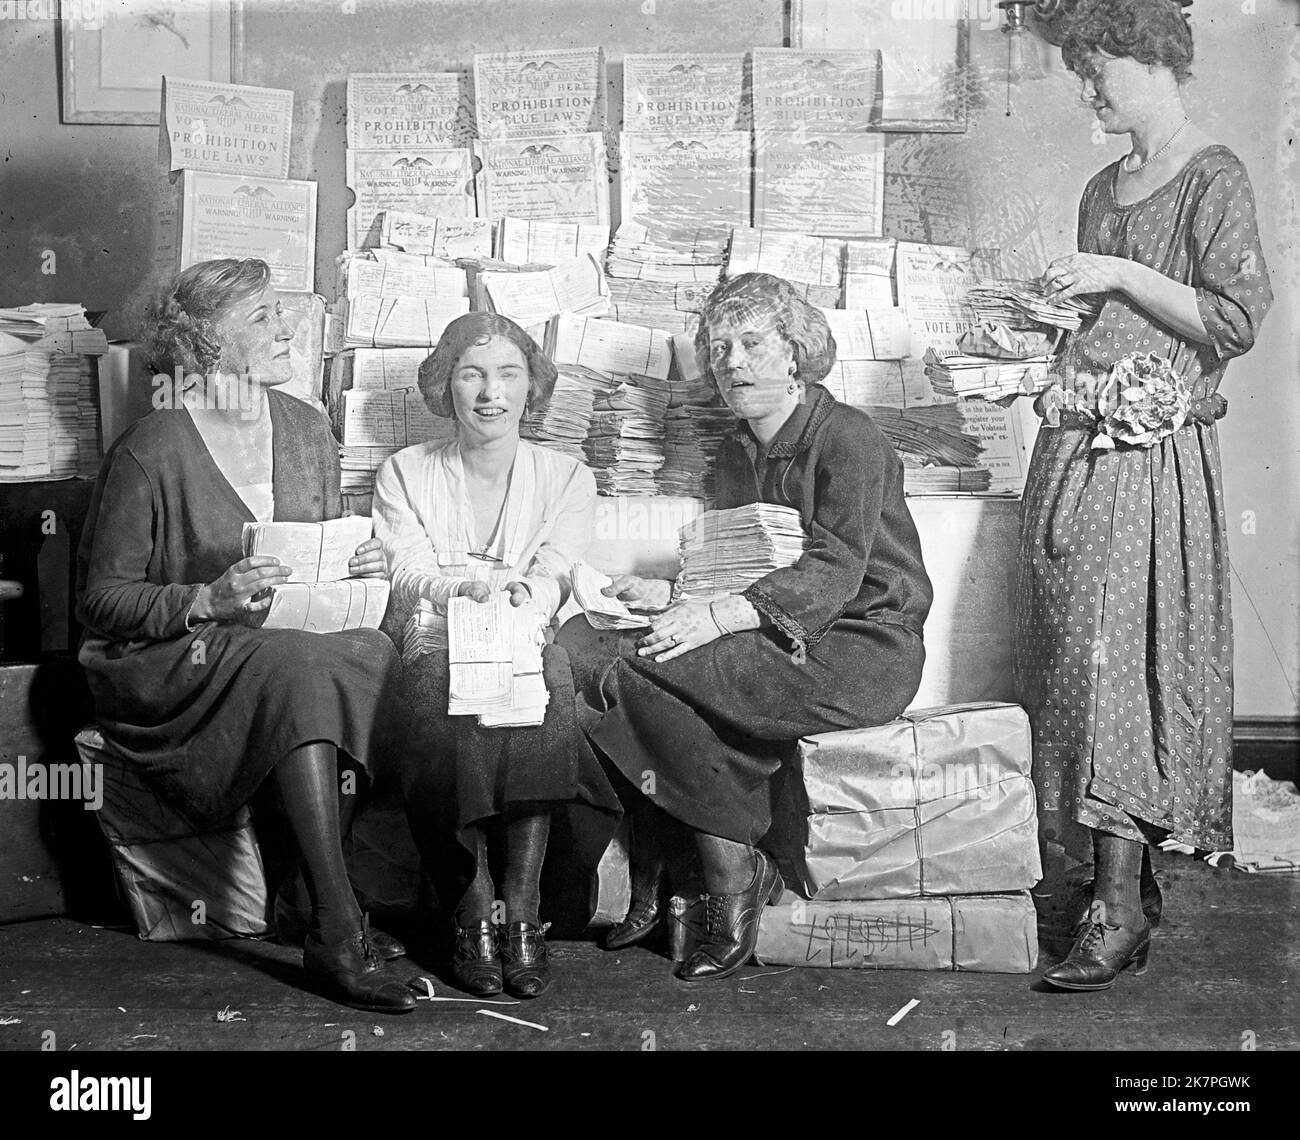 Prohibition Vote, America Stock Photo